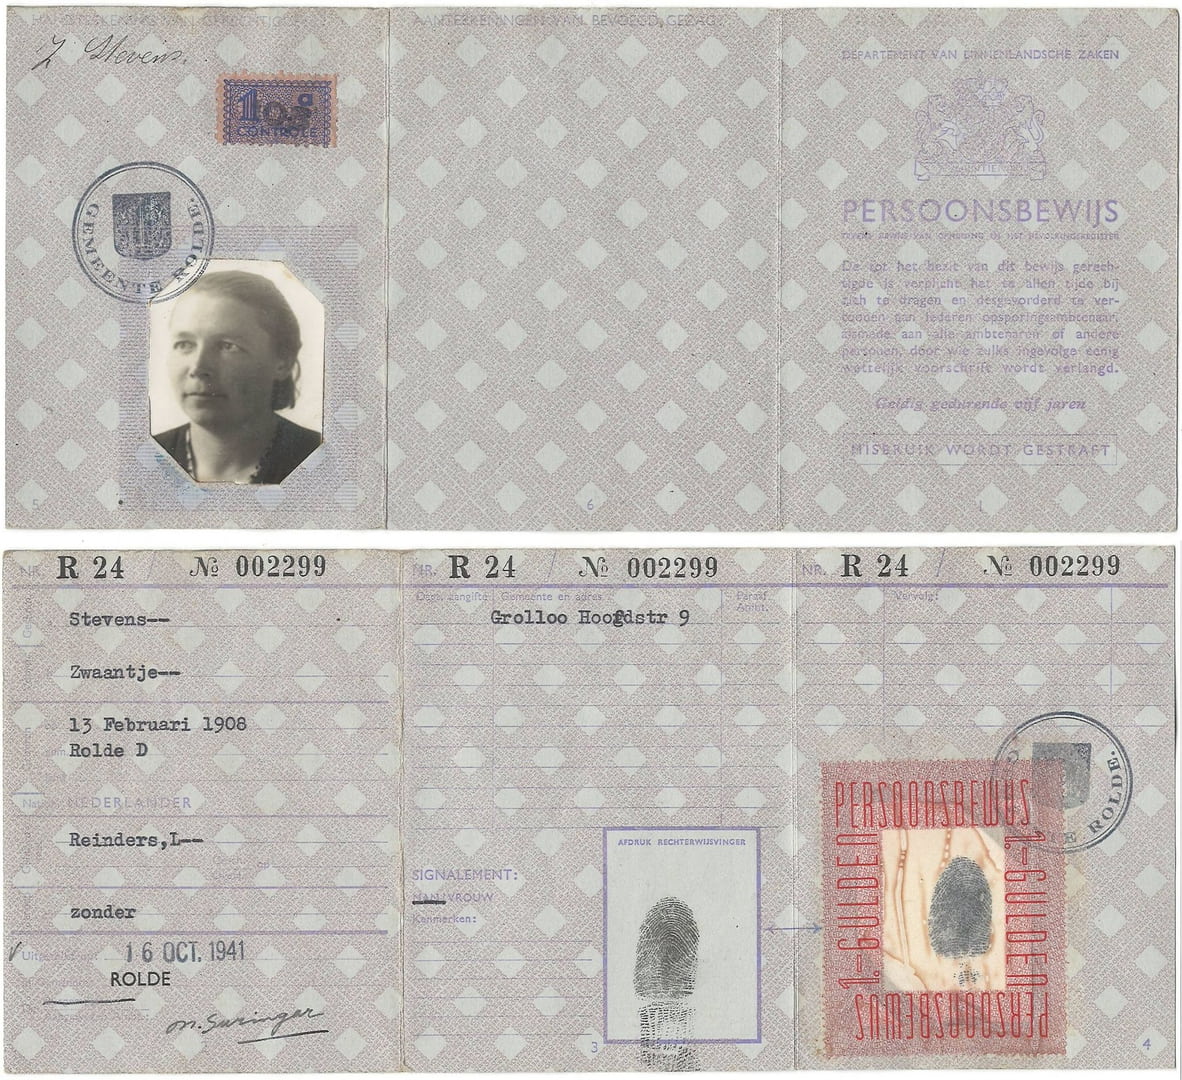 1941 persoonsbewijs Zwaantje Stevens